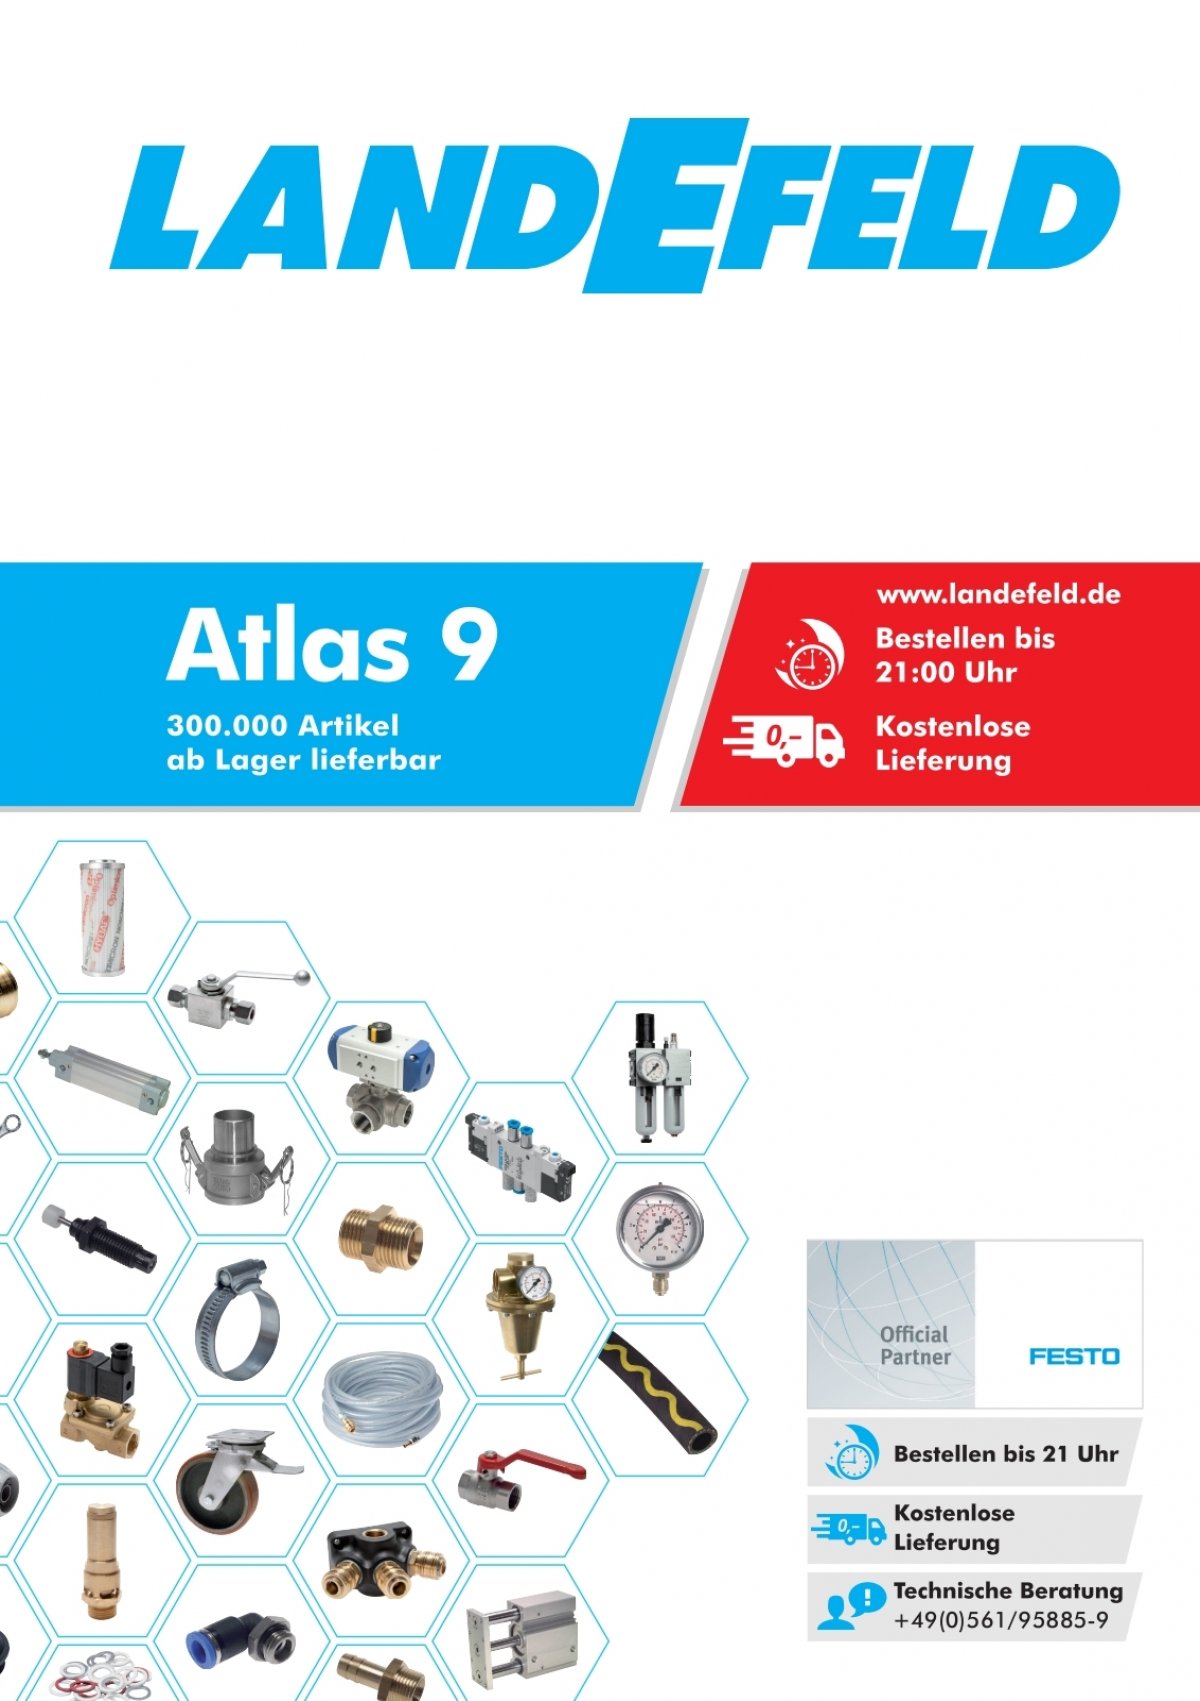 Sang-A Steckanschluss-Rückschlagventil 8mm, IQS-Standard (HIQS80) -  Landefeld - Pneumatik - Hydraulik - Industriebedarf